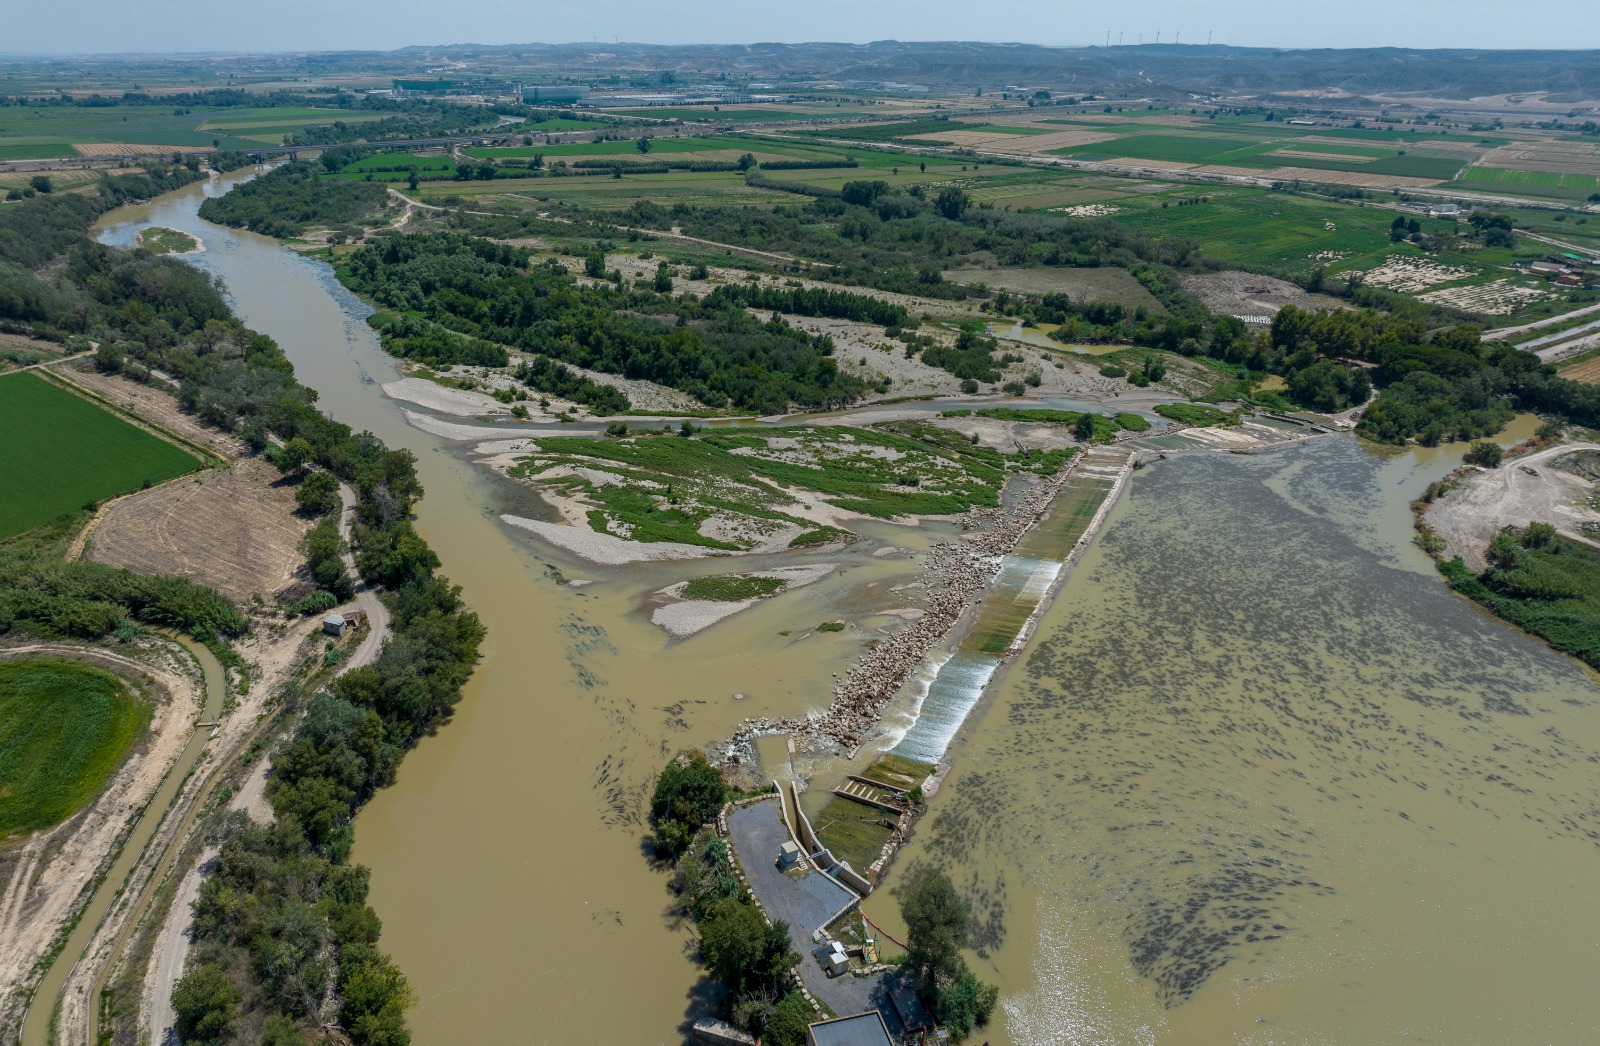 Acciones medioambientales Ebro Resilience: permeabilización del Azud de Pina, río Ebro (Zaragoza)